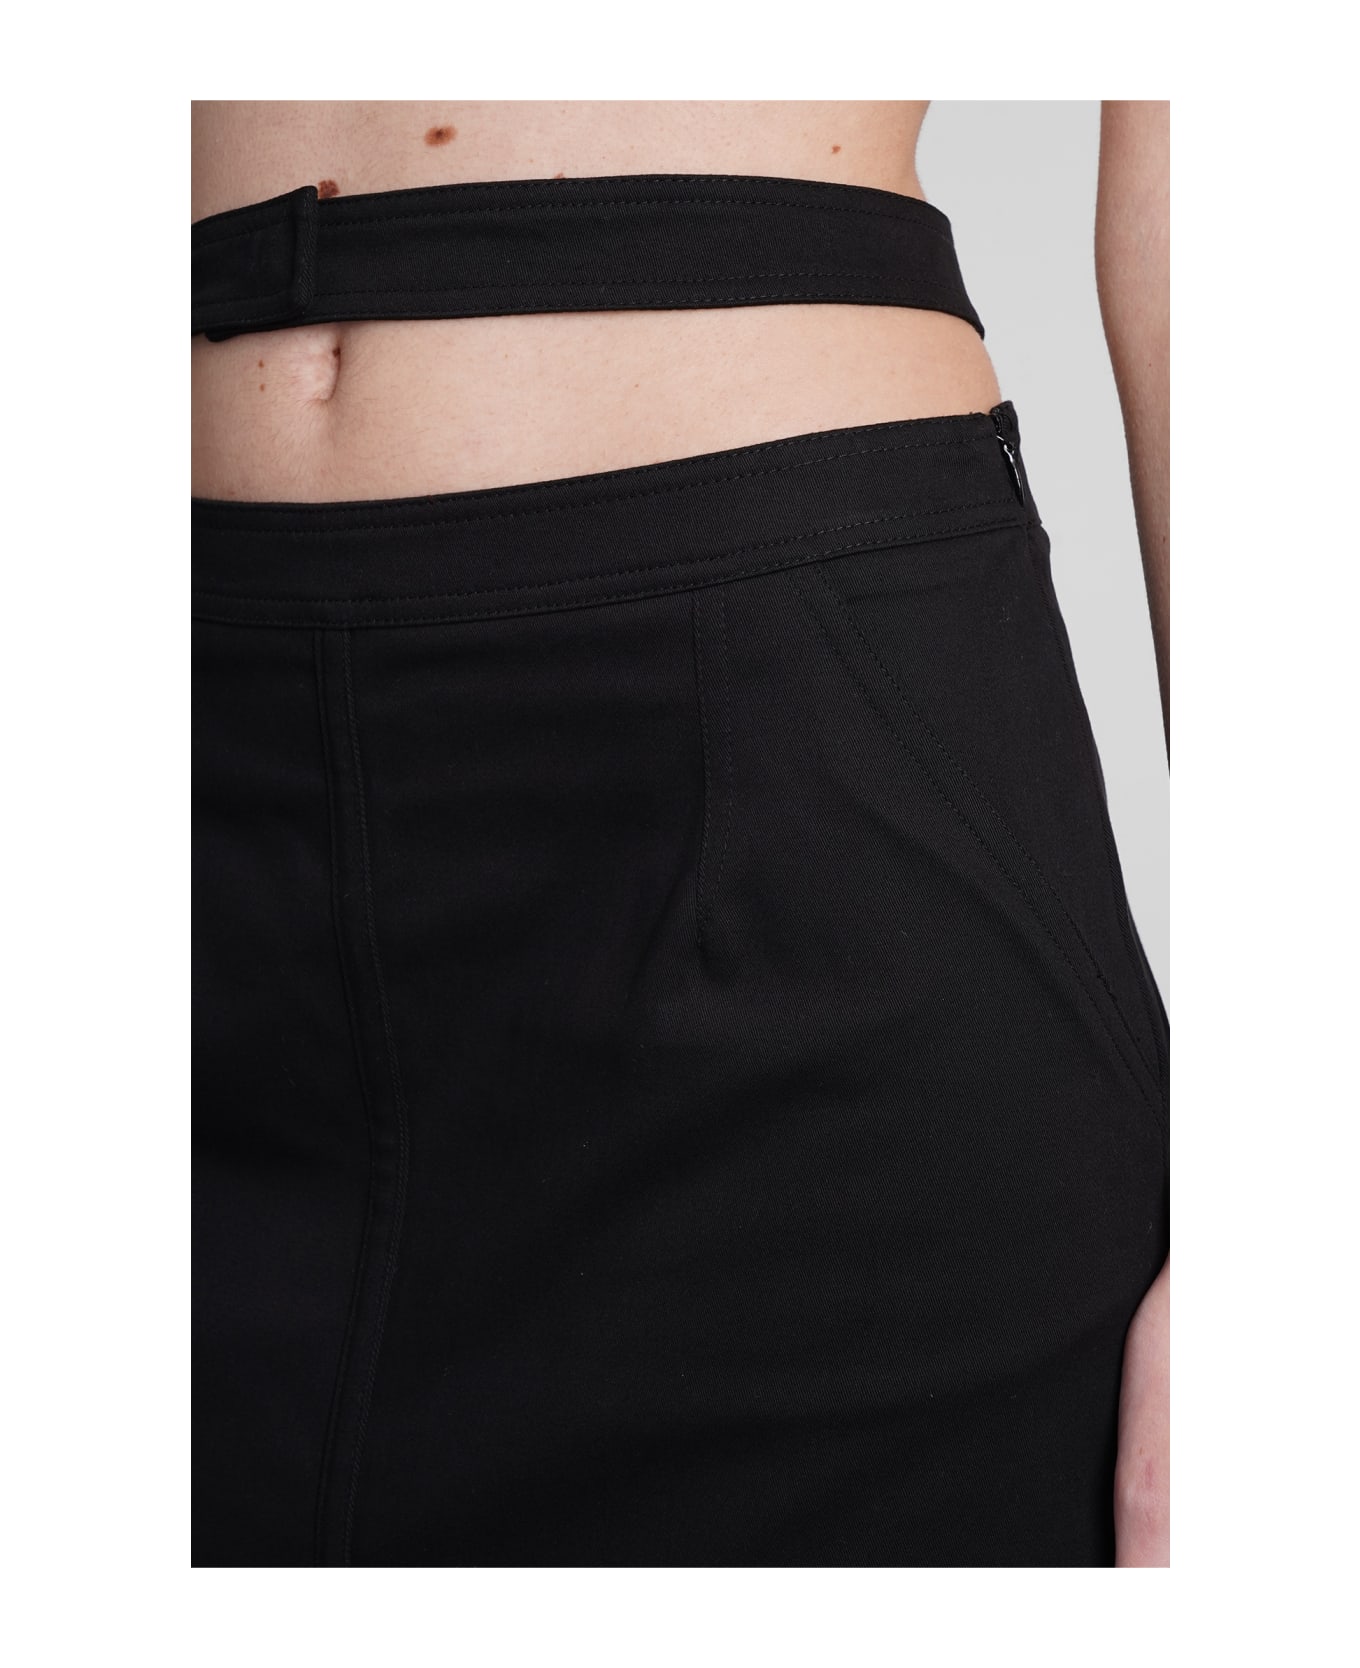 ANDREĀDAMO Skirt In Black Cotton - black スカート